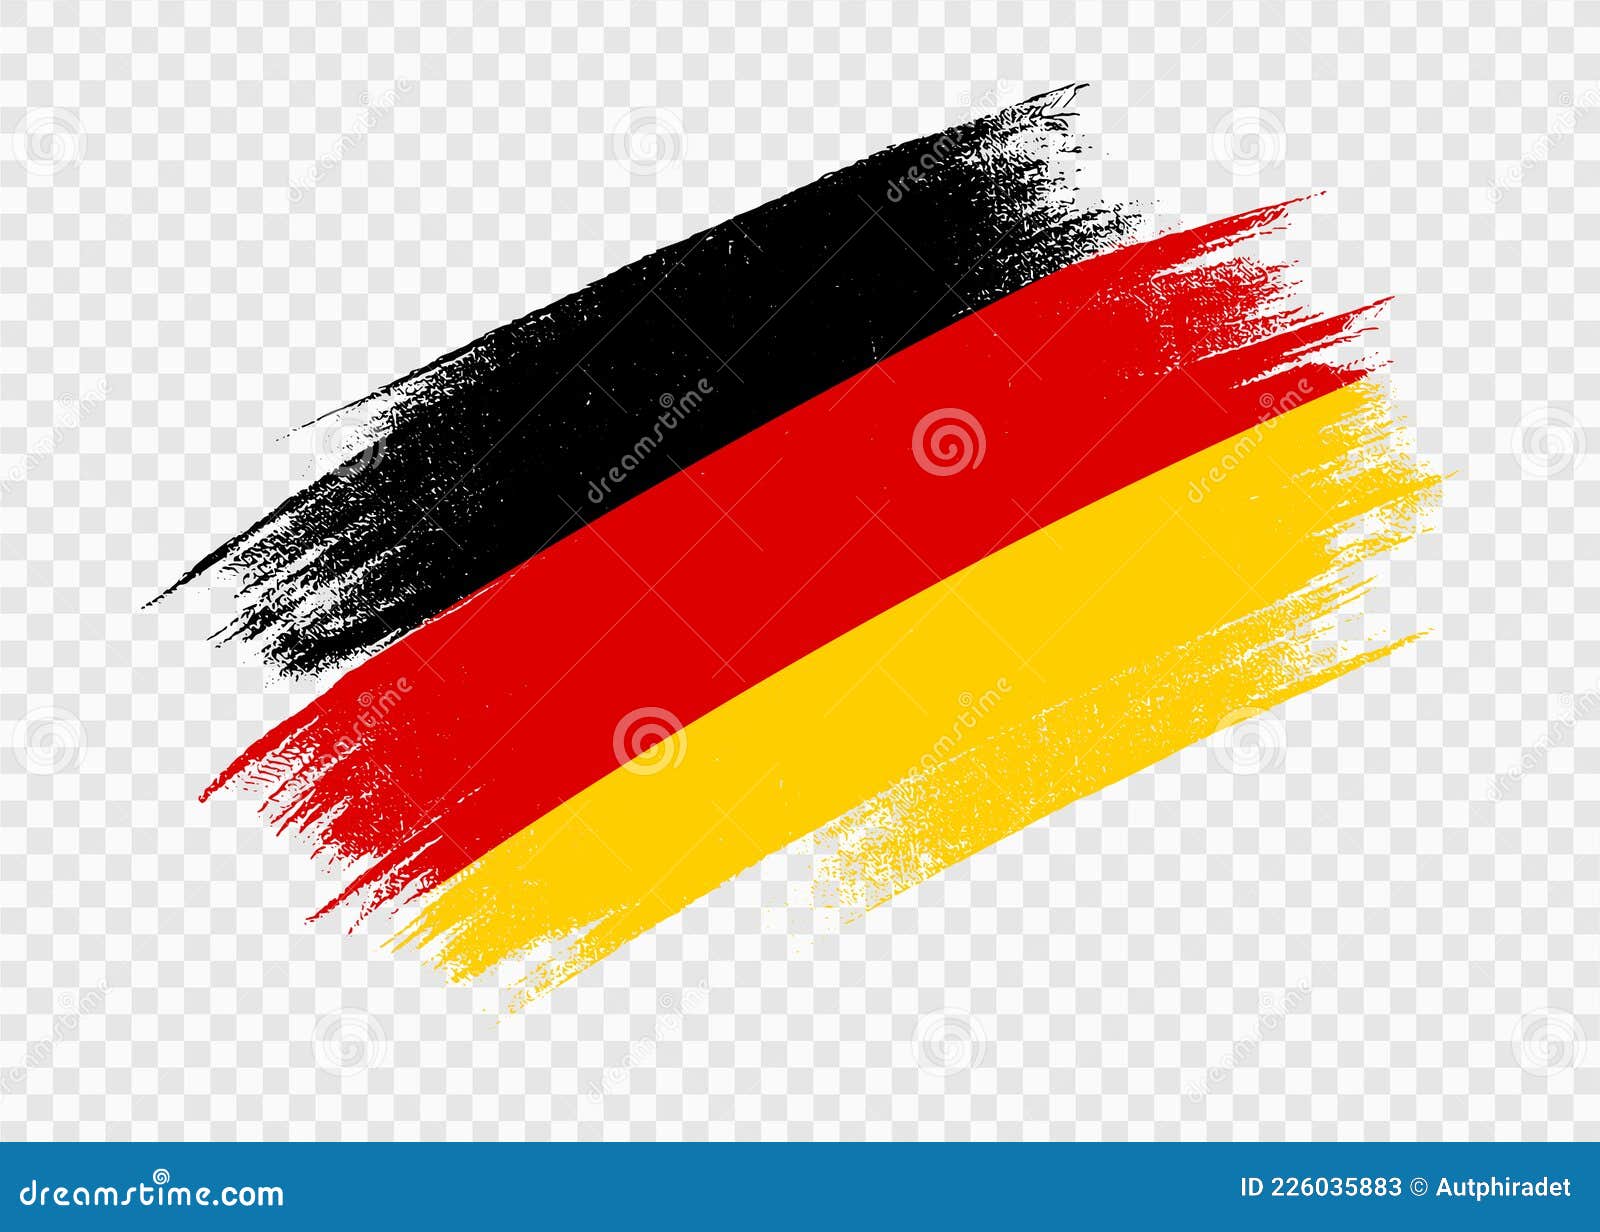 Cờ Đức với ba sọc đen, đỏ và vàng là một trong những cờ quốc kỳ nổi tiếng nhất trên thế giới. Chúng tôi có những hình ảnh đẹp mê hồn về cờ Đức để bạn chiêm ngưỡng.